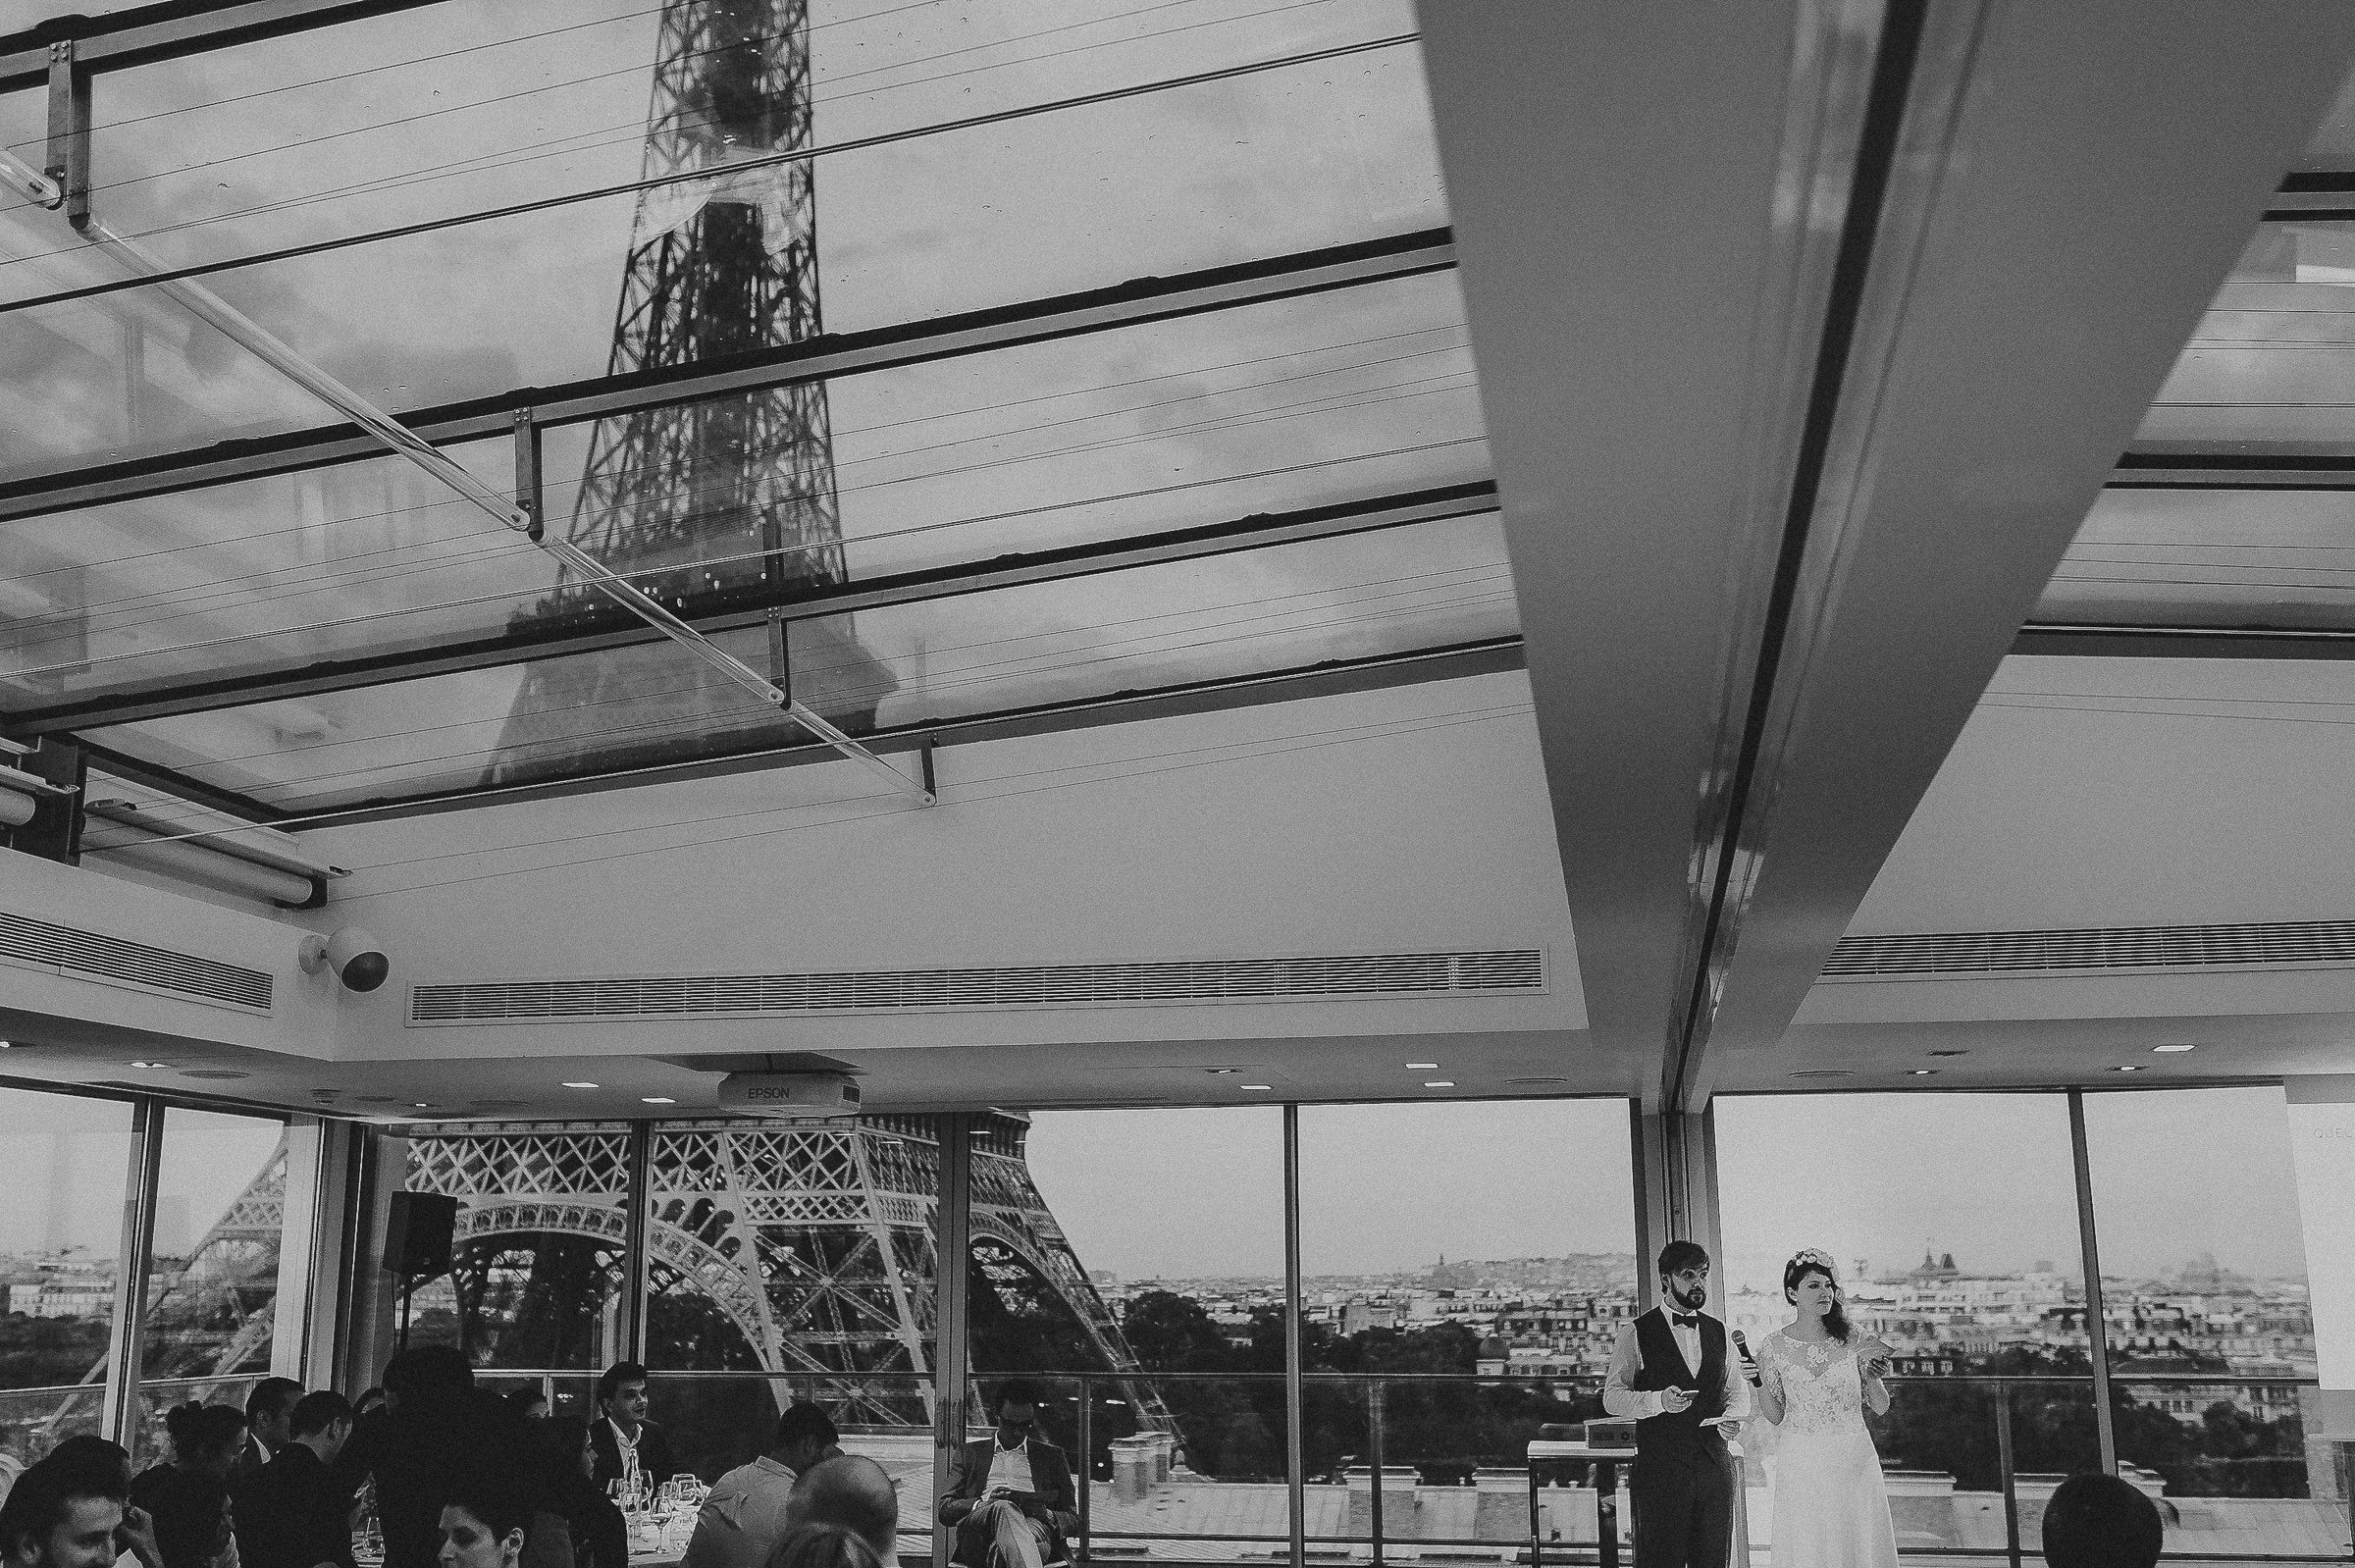 Paris Wedding Location